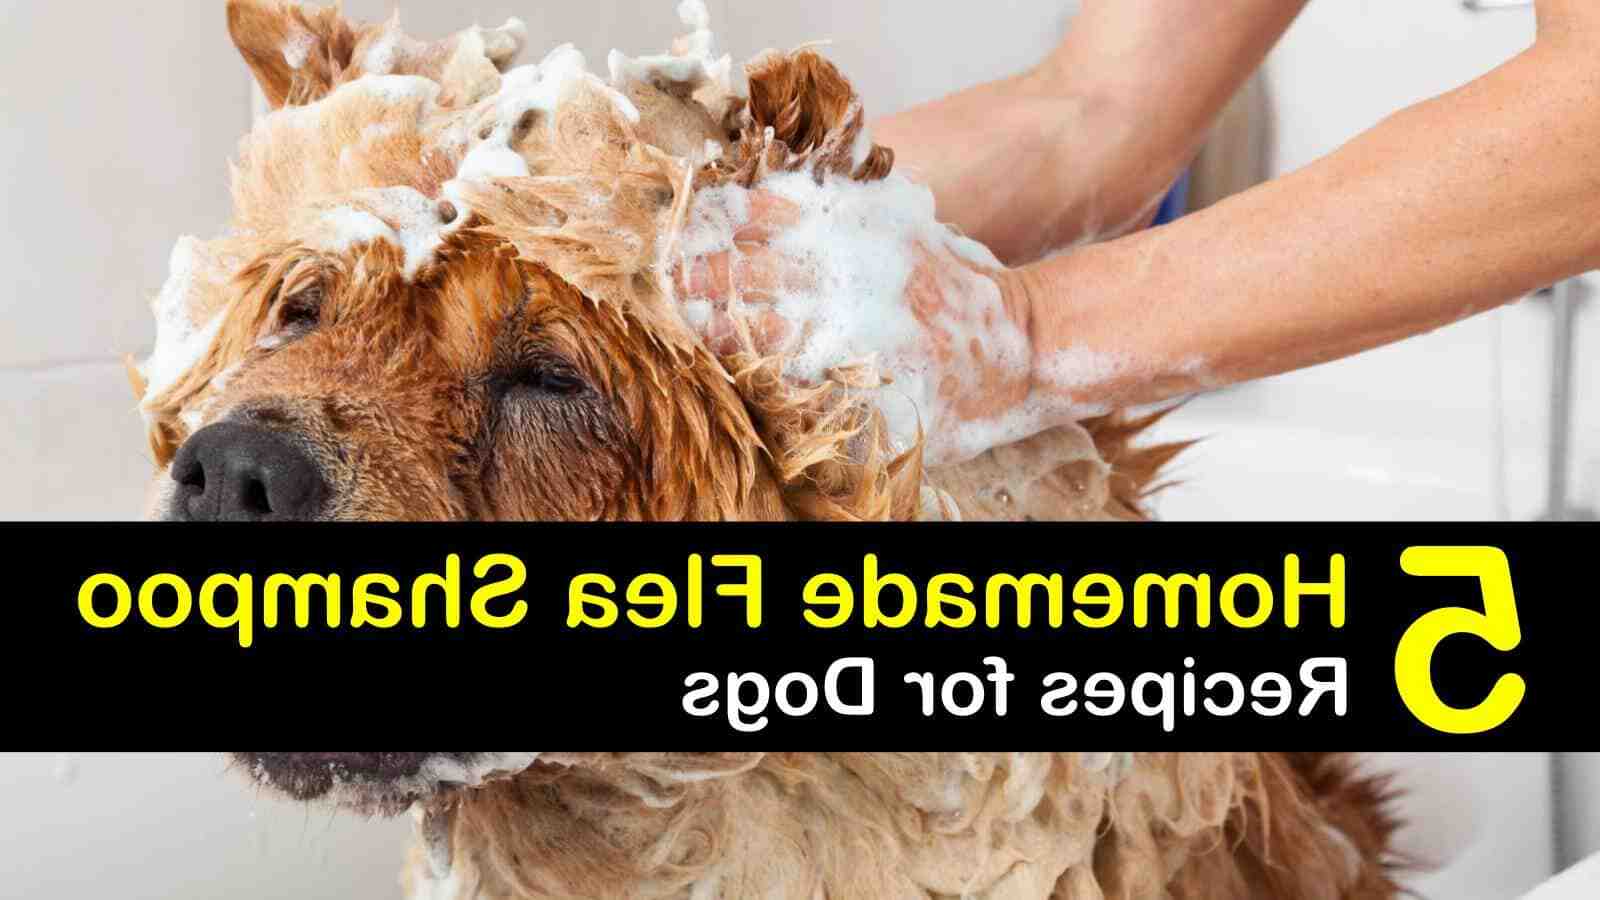 Quel savon utiliser pour laver un chien ?